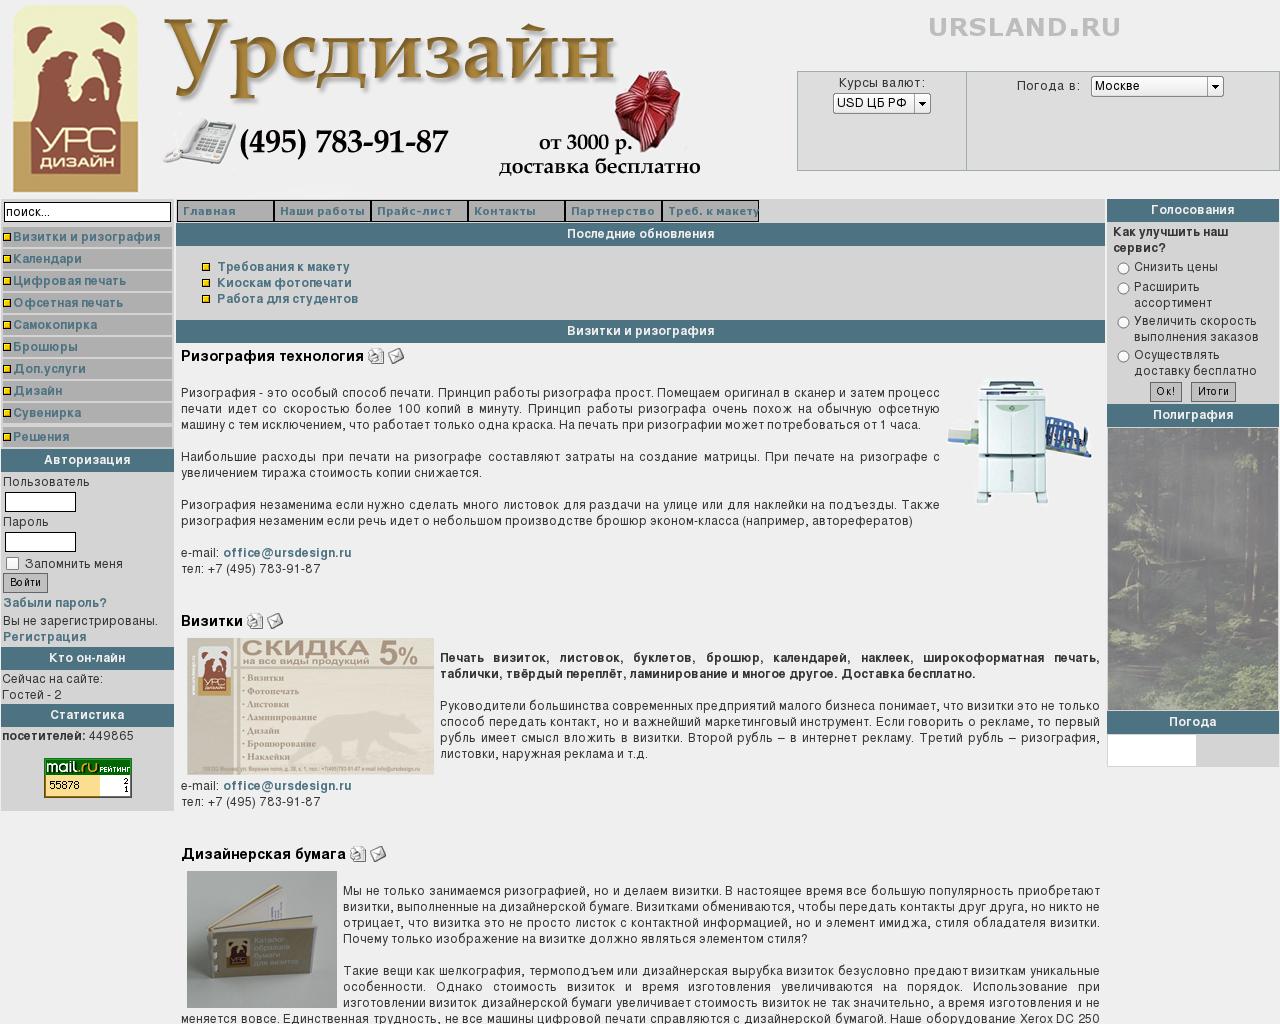 Изображение сайта ursland.ru в разрешении 1280x1024